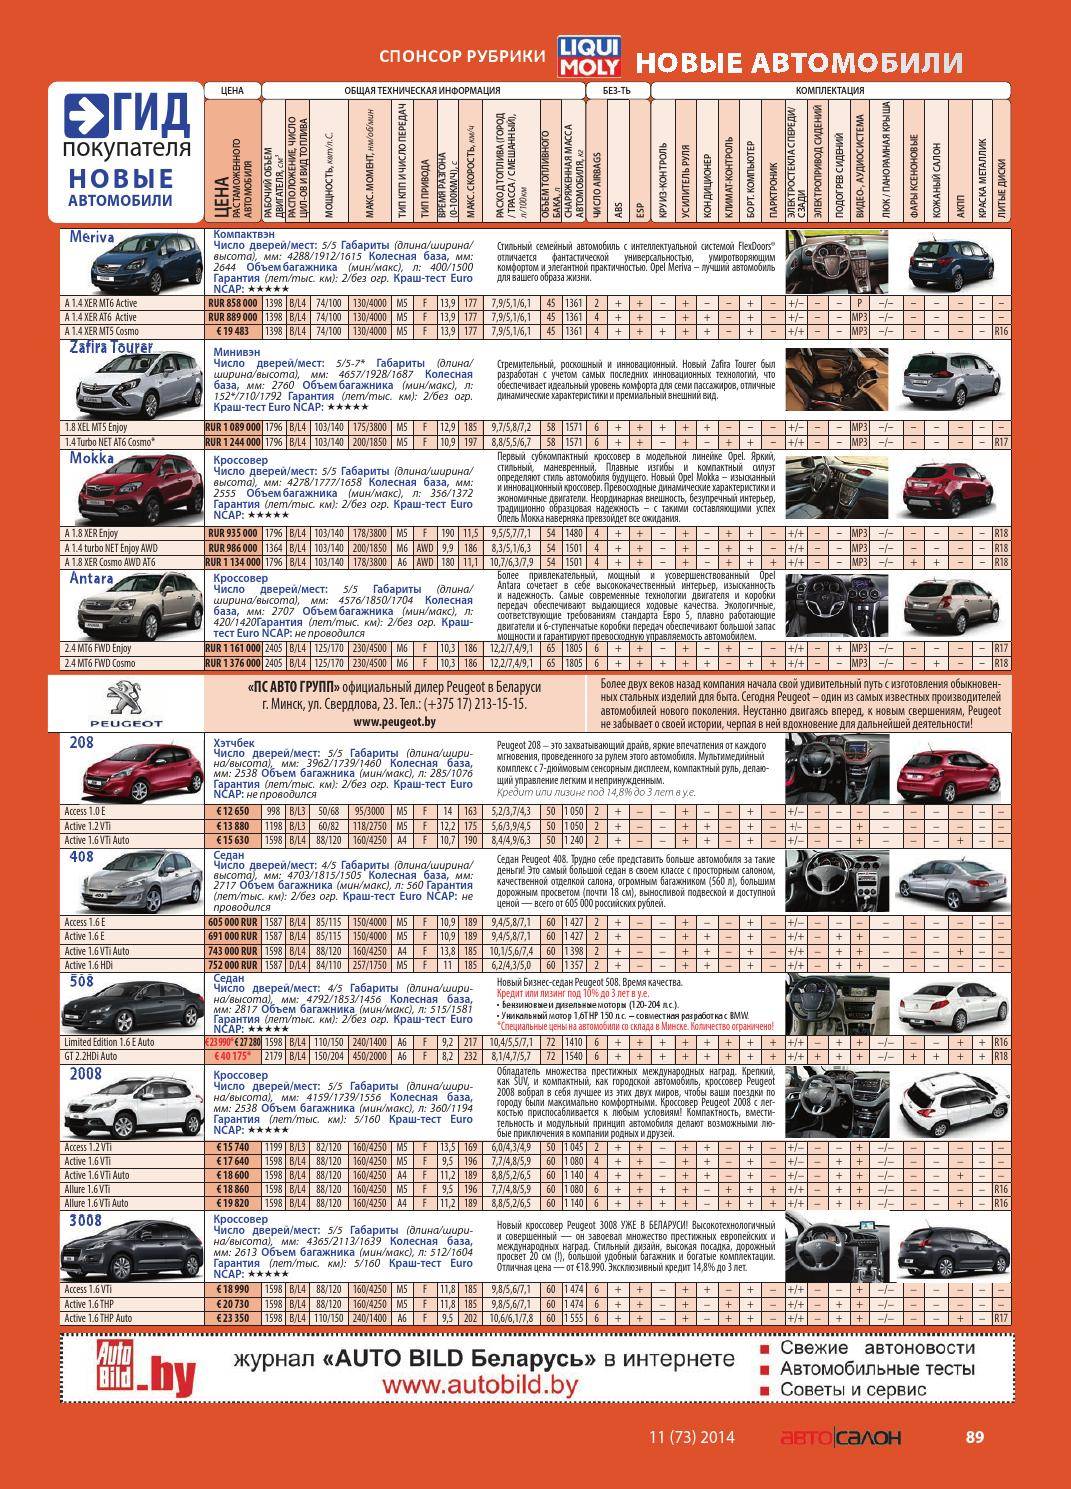 Сравнительная таблица клиренса автомобилей